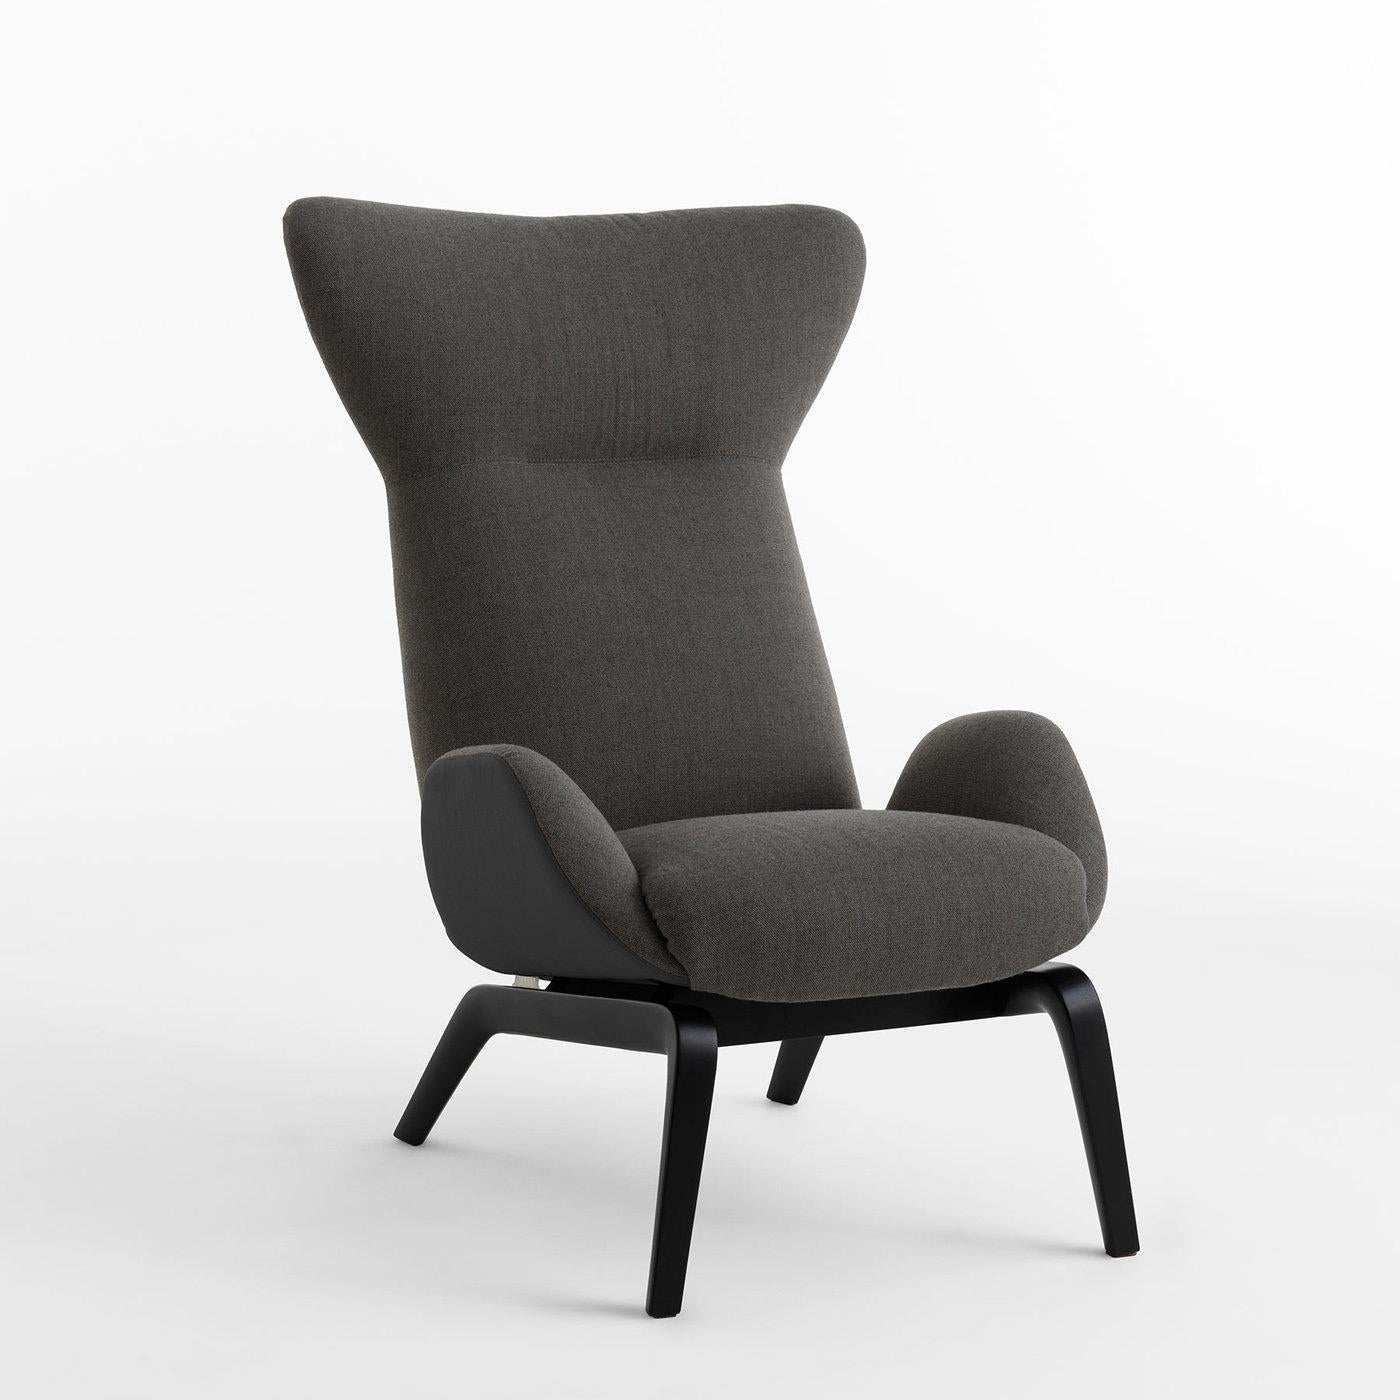 Inspiré du style scandinave de décoration intérieure, ce superbe fauteuil présente des lignes doucement incurvées et une allure confortable. Conçu par le Studio Balutto et réalisé avec un soin méticuleux des détails, il se compose d'une base en bois